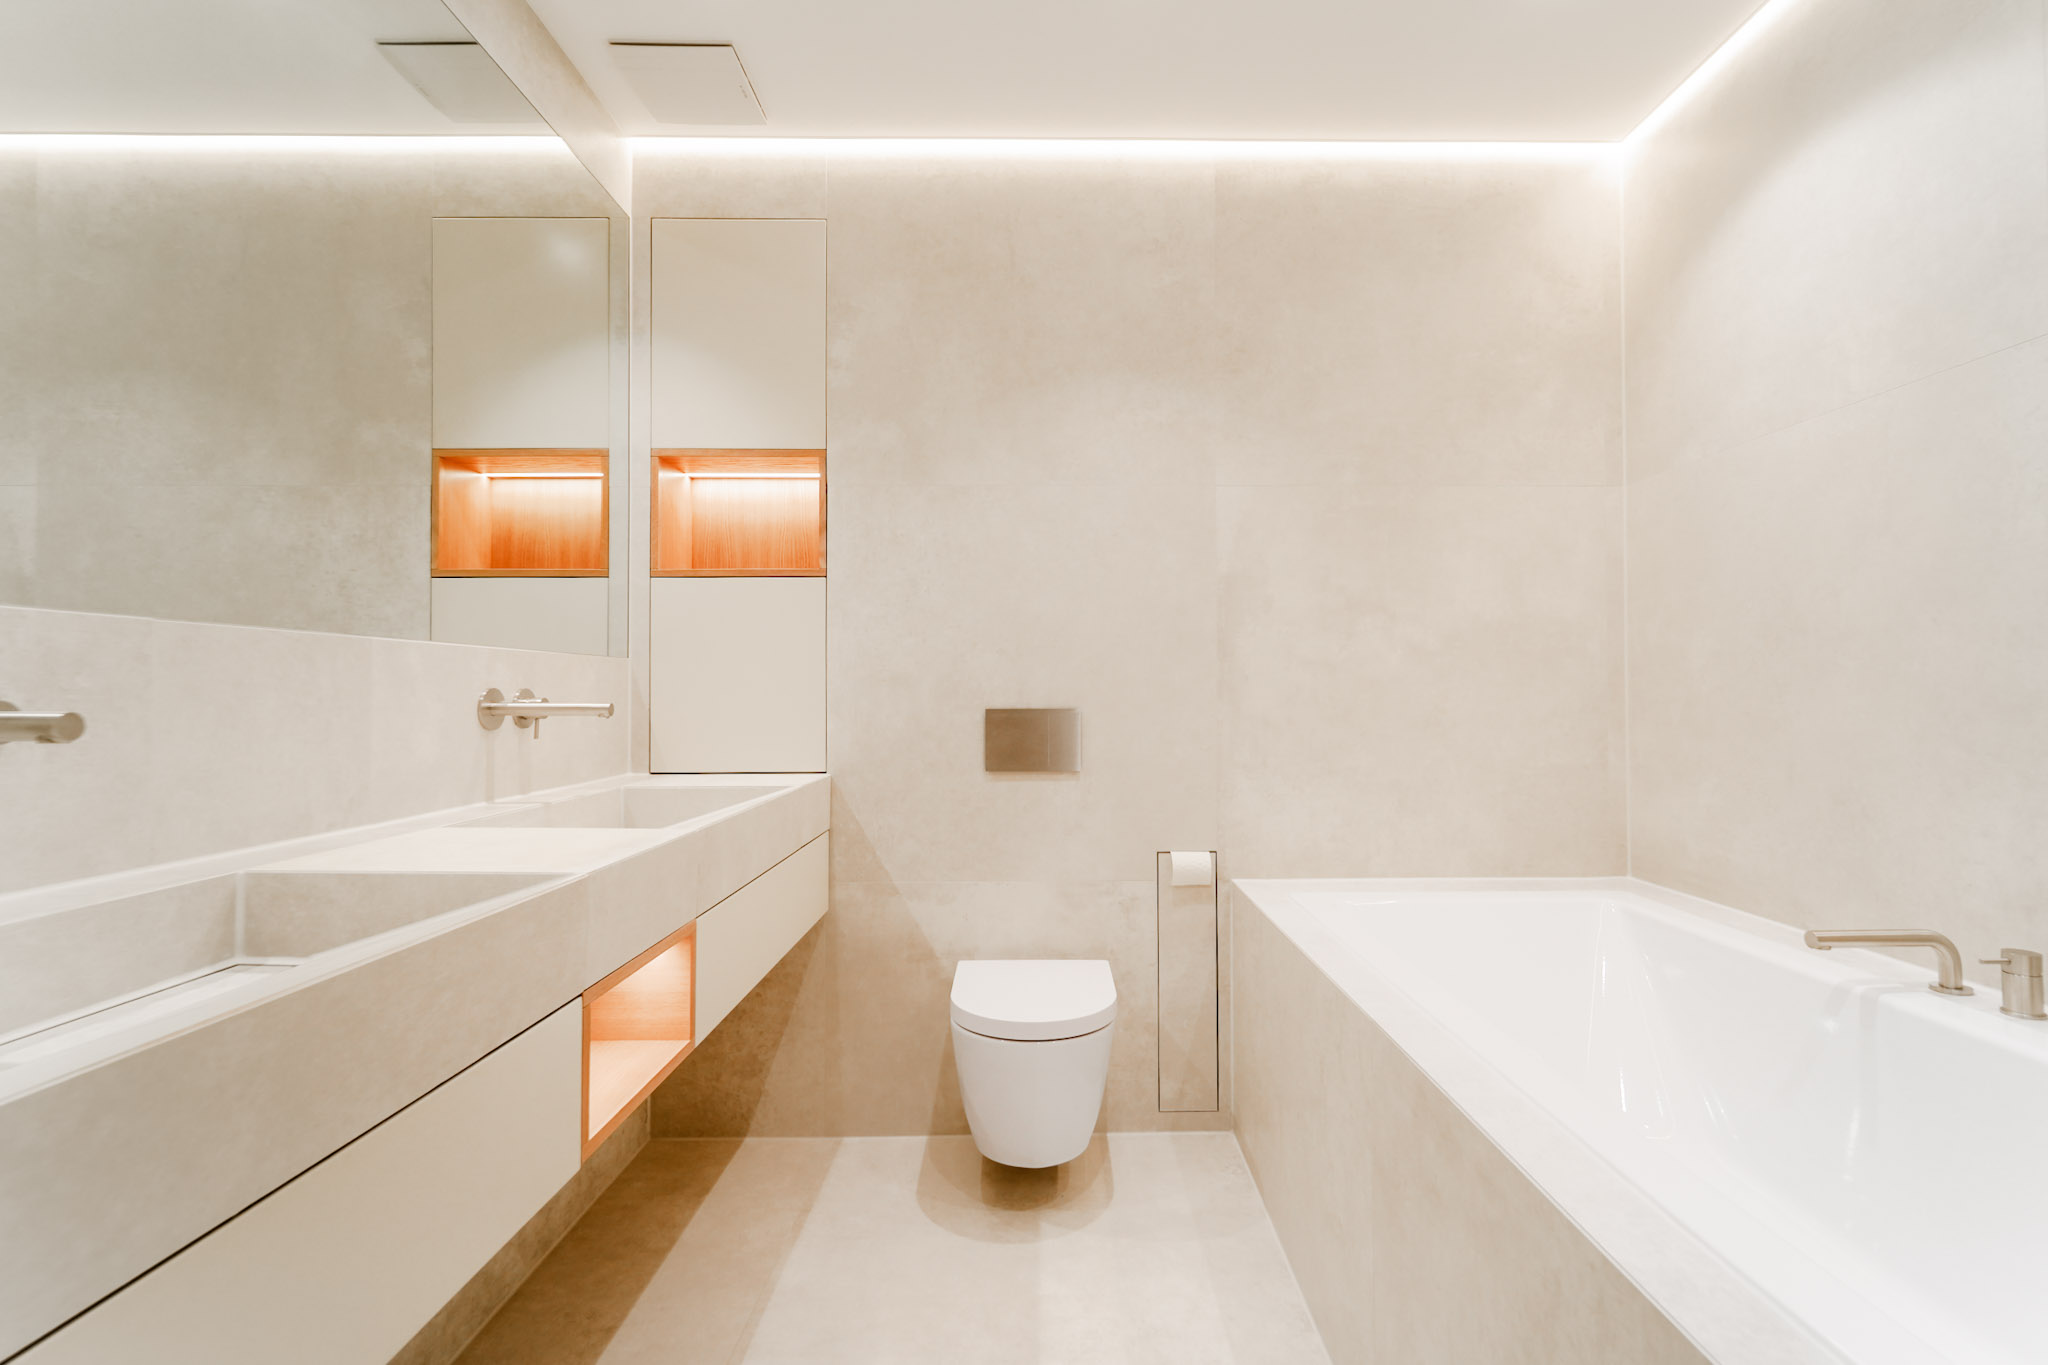 Modernes, elegantes Badezimmer mit luxuriösen Armaturen